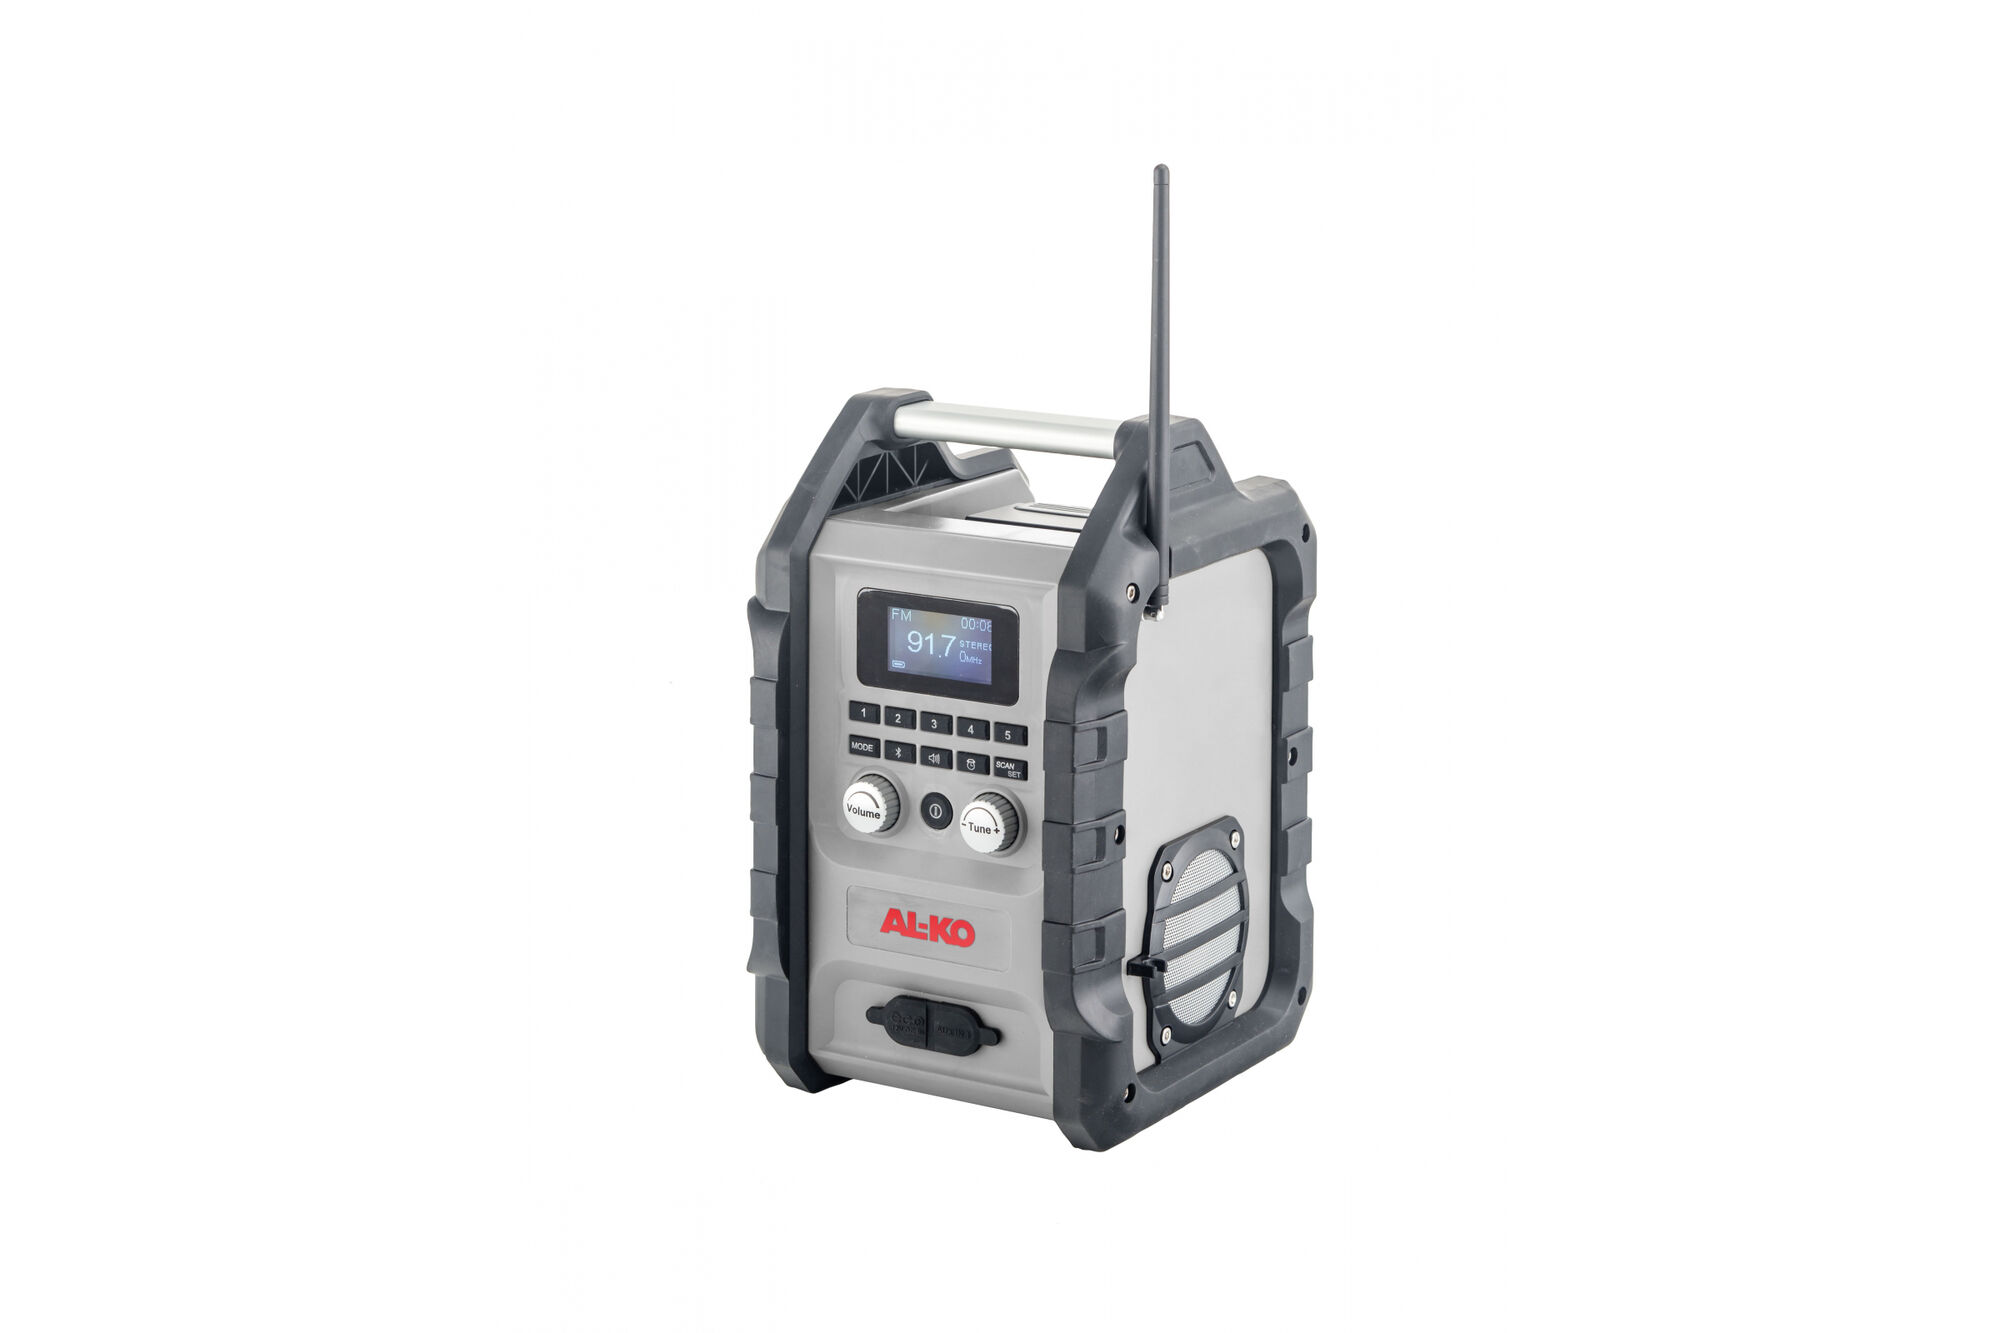 Аккумуляторное радио для строительных площадок AL-KO WR 2000 EasyFlex 113631